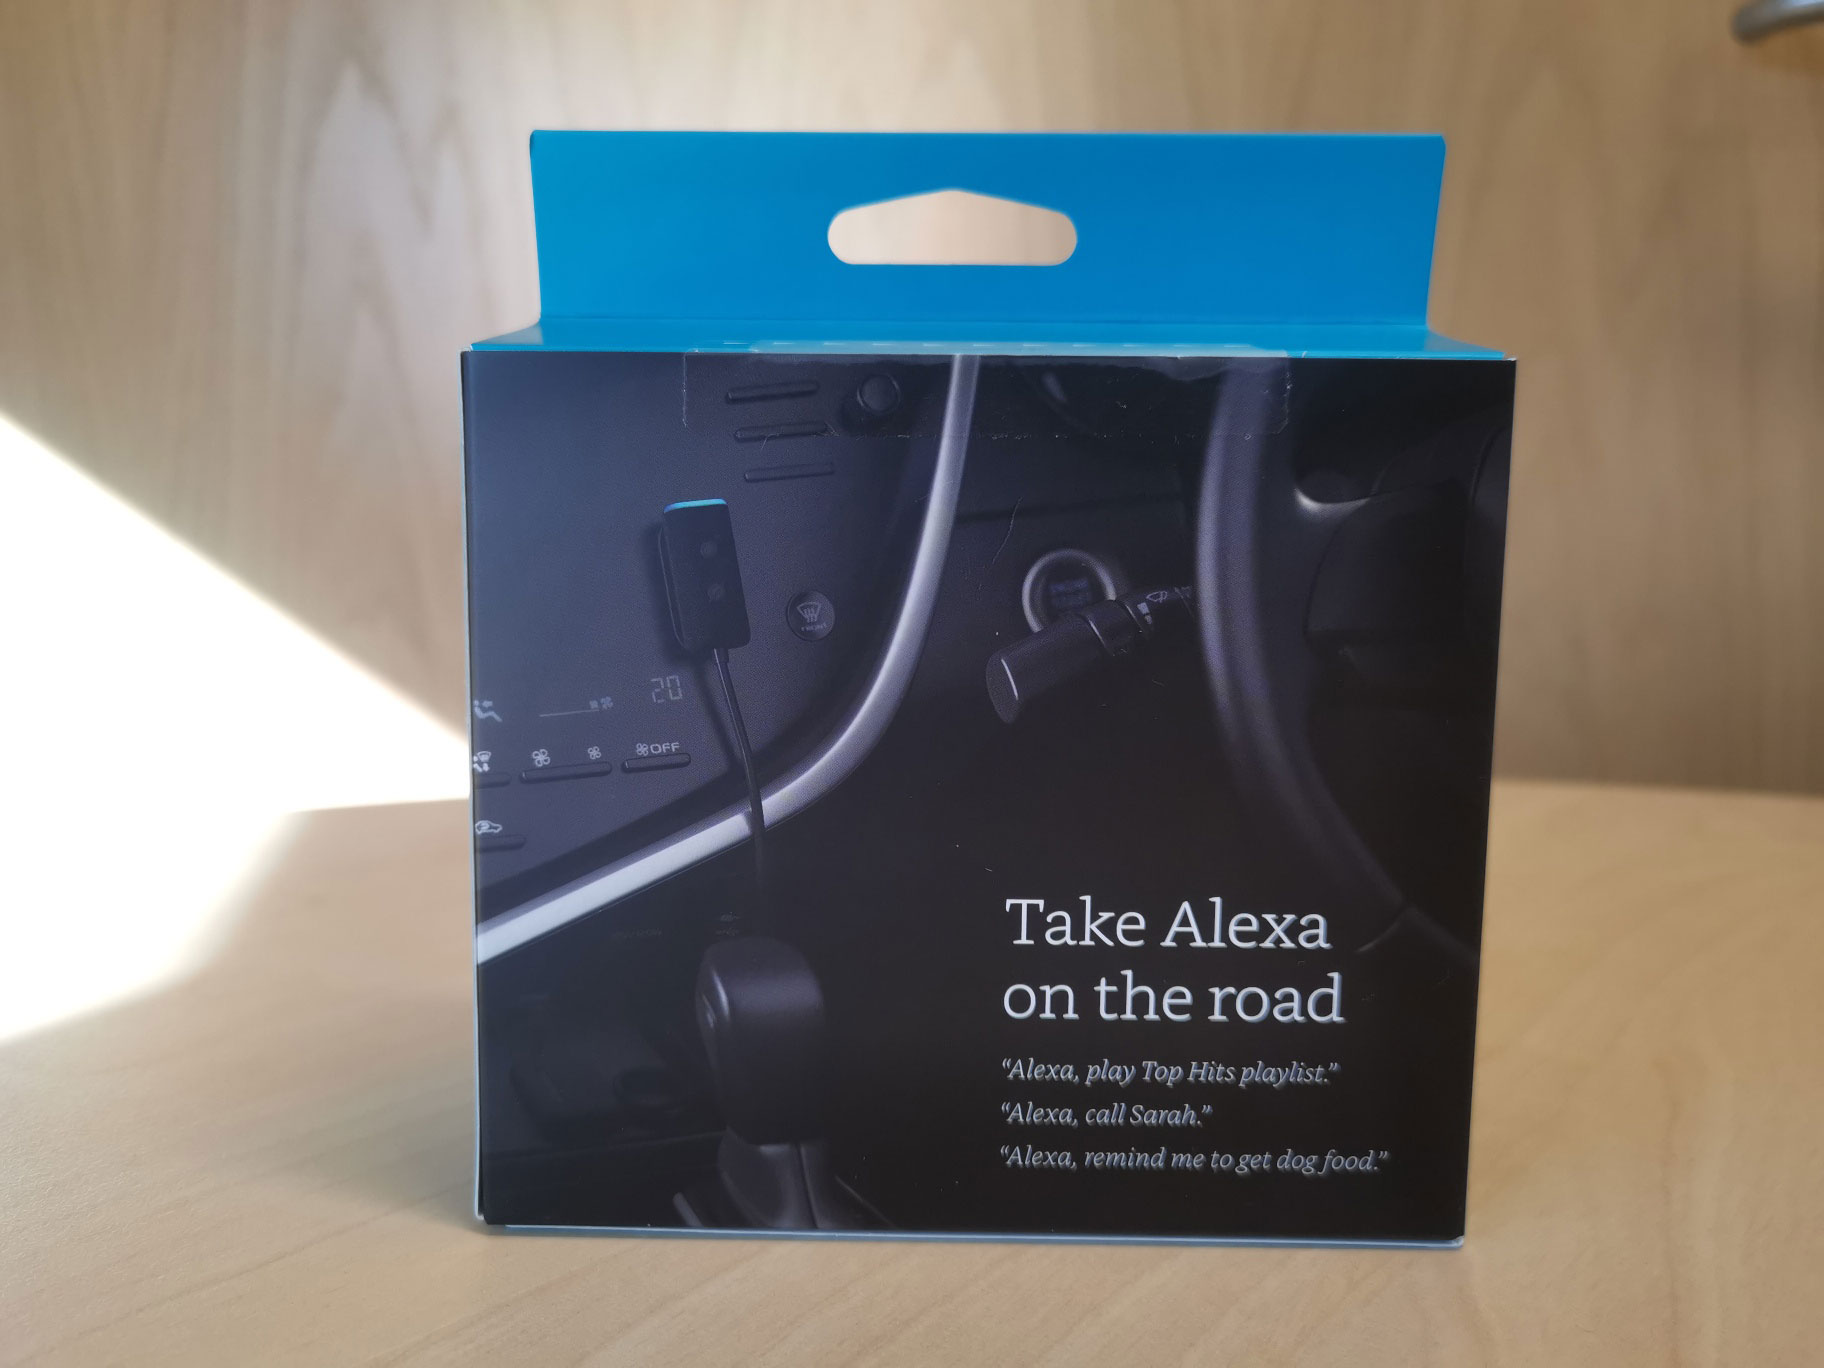 Echo Auto (2nd gen) review: Alexa rides shotgun